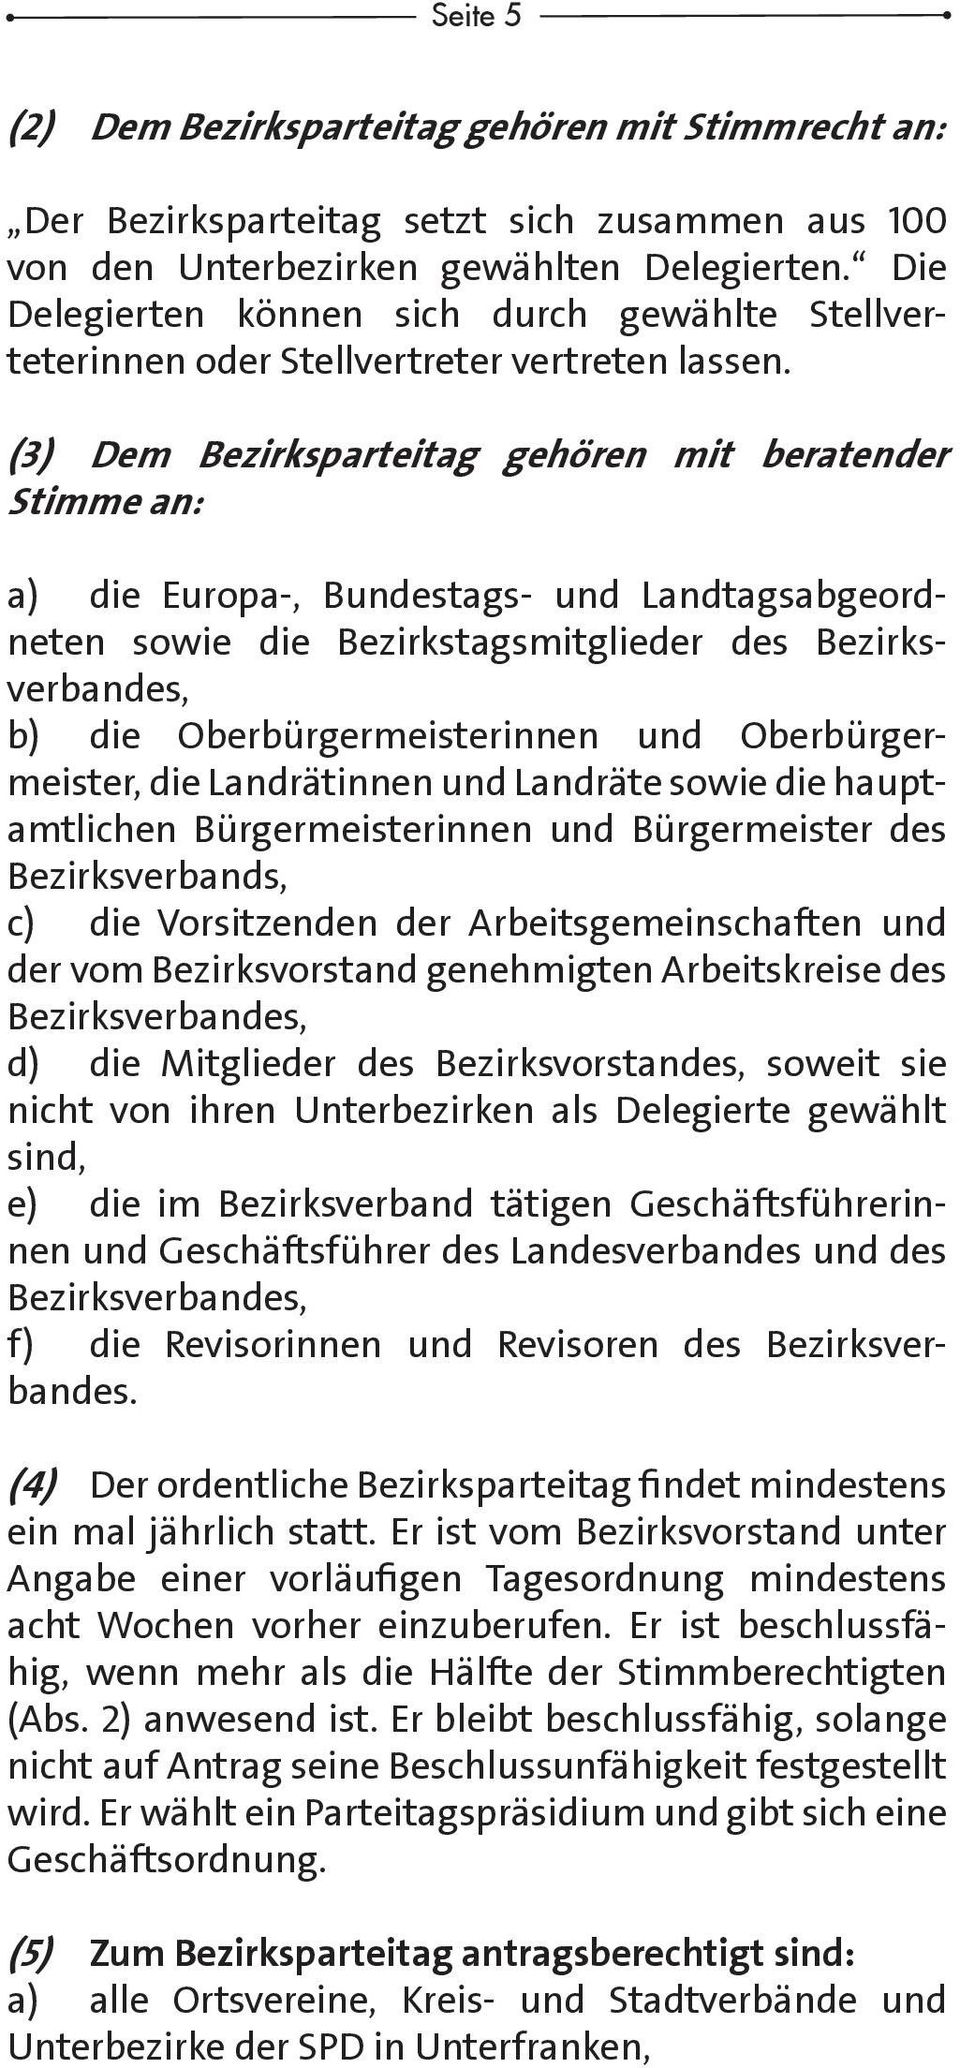 (3) Dem Bezirksparteitag gehören mit beratender Stimme an: a) die Europa-, Bundestags- und Landtags abge ordneten sowie die Bezirkstagsmitglieder des Bezirksverbandes, b) die Oberbürgermeisterinnen